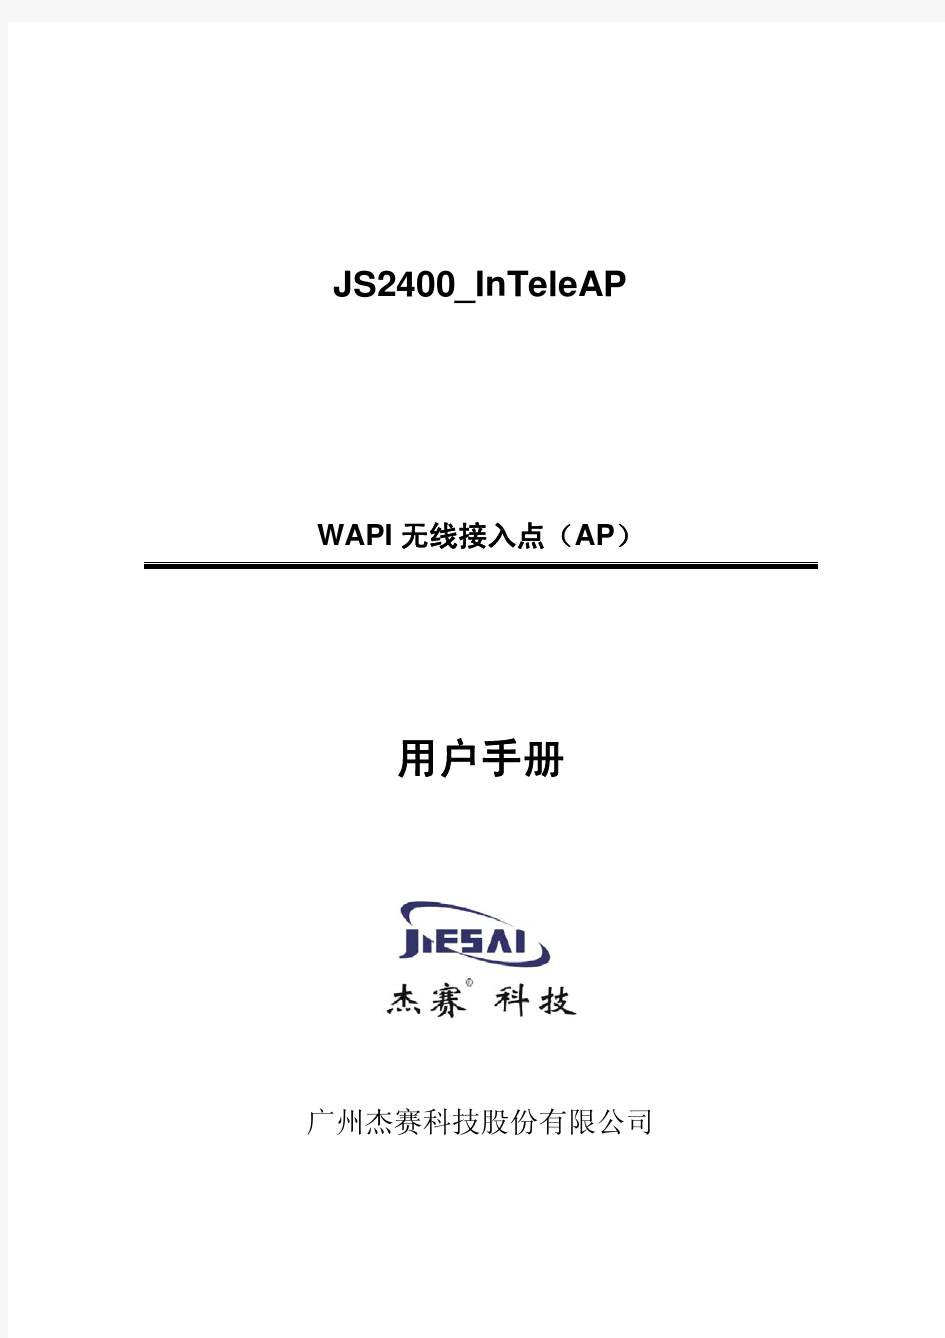 杰赛科技股份有限公司 - 无线接入点JS2400_InTeleAP Rev.A用户手册V1.6